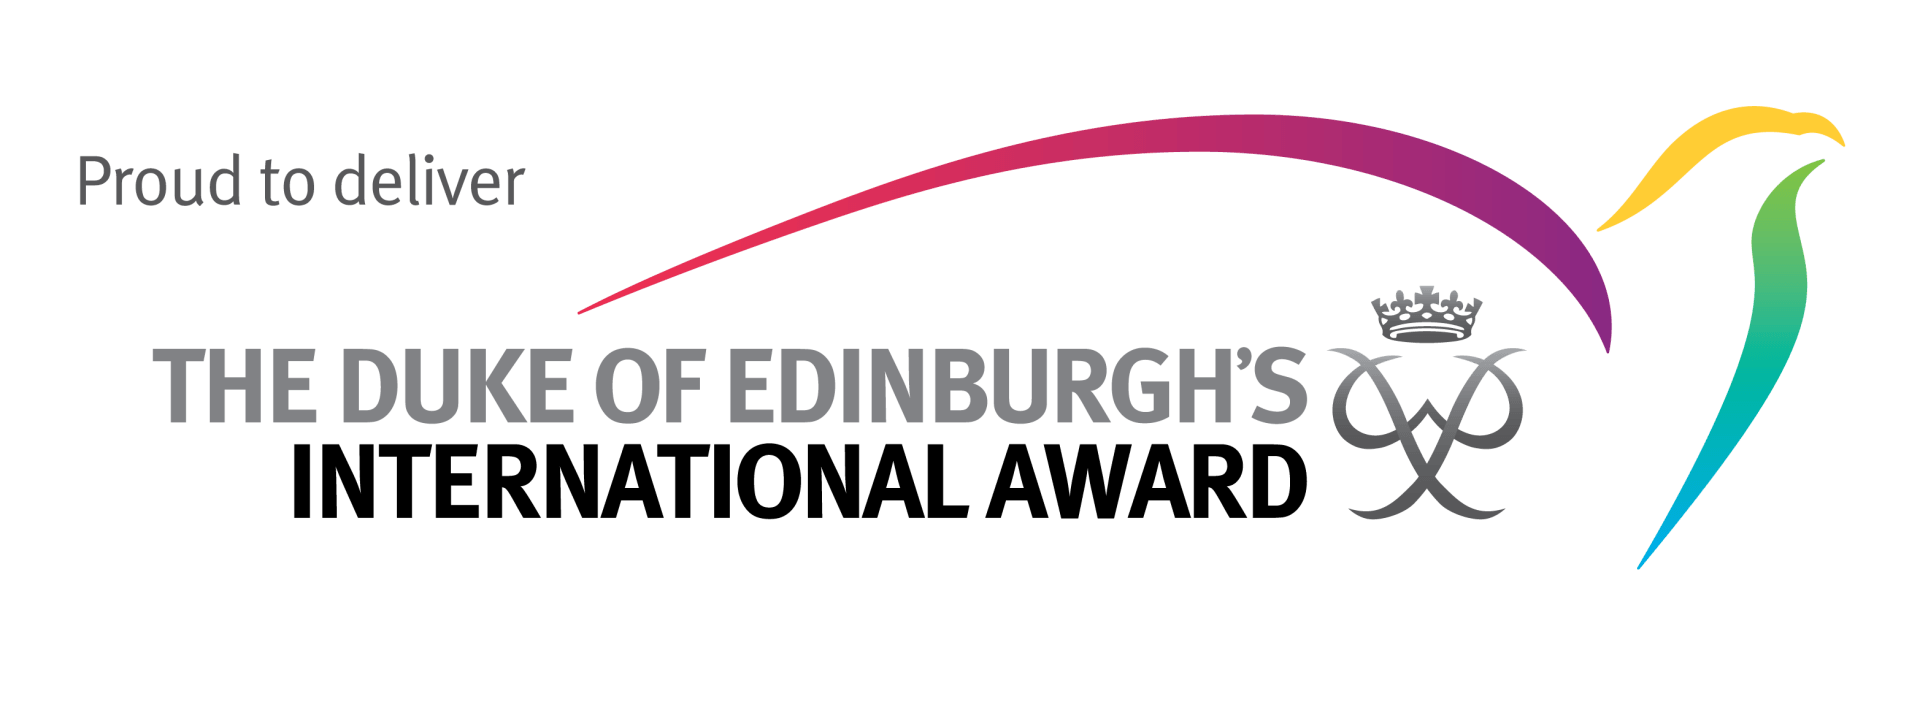 The Duke of Edinburgh's International Award logo